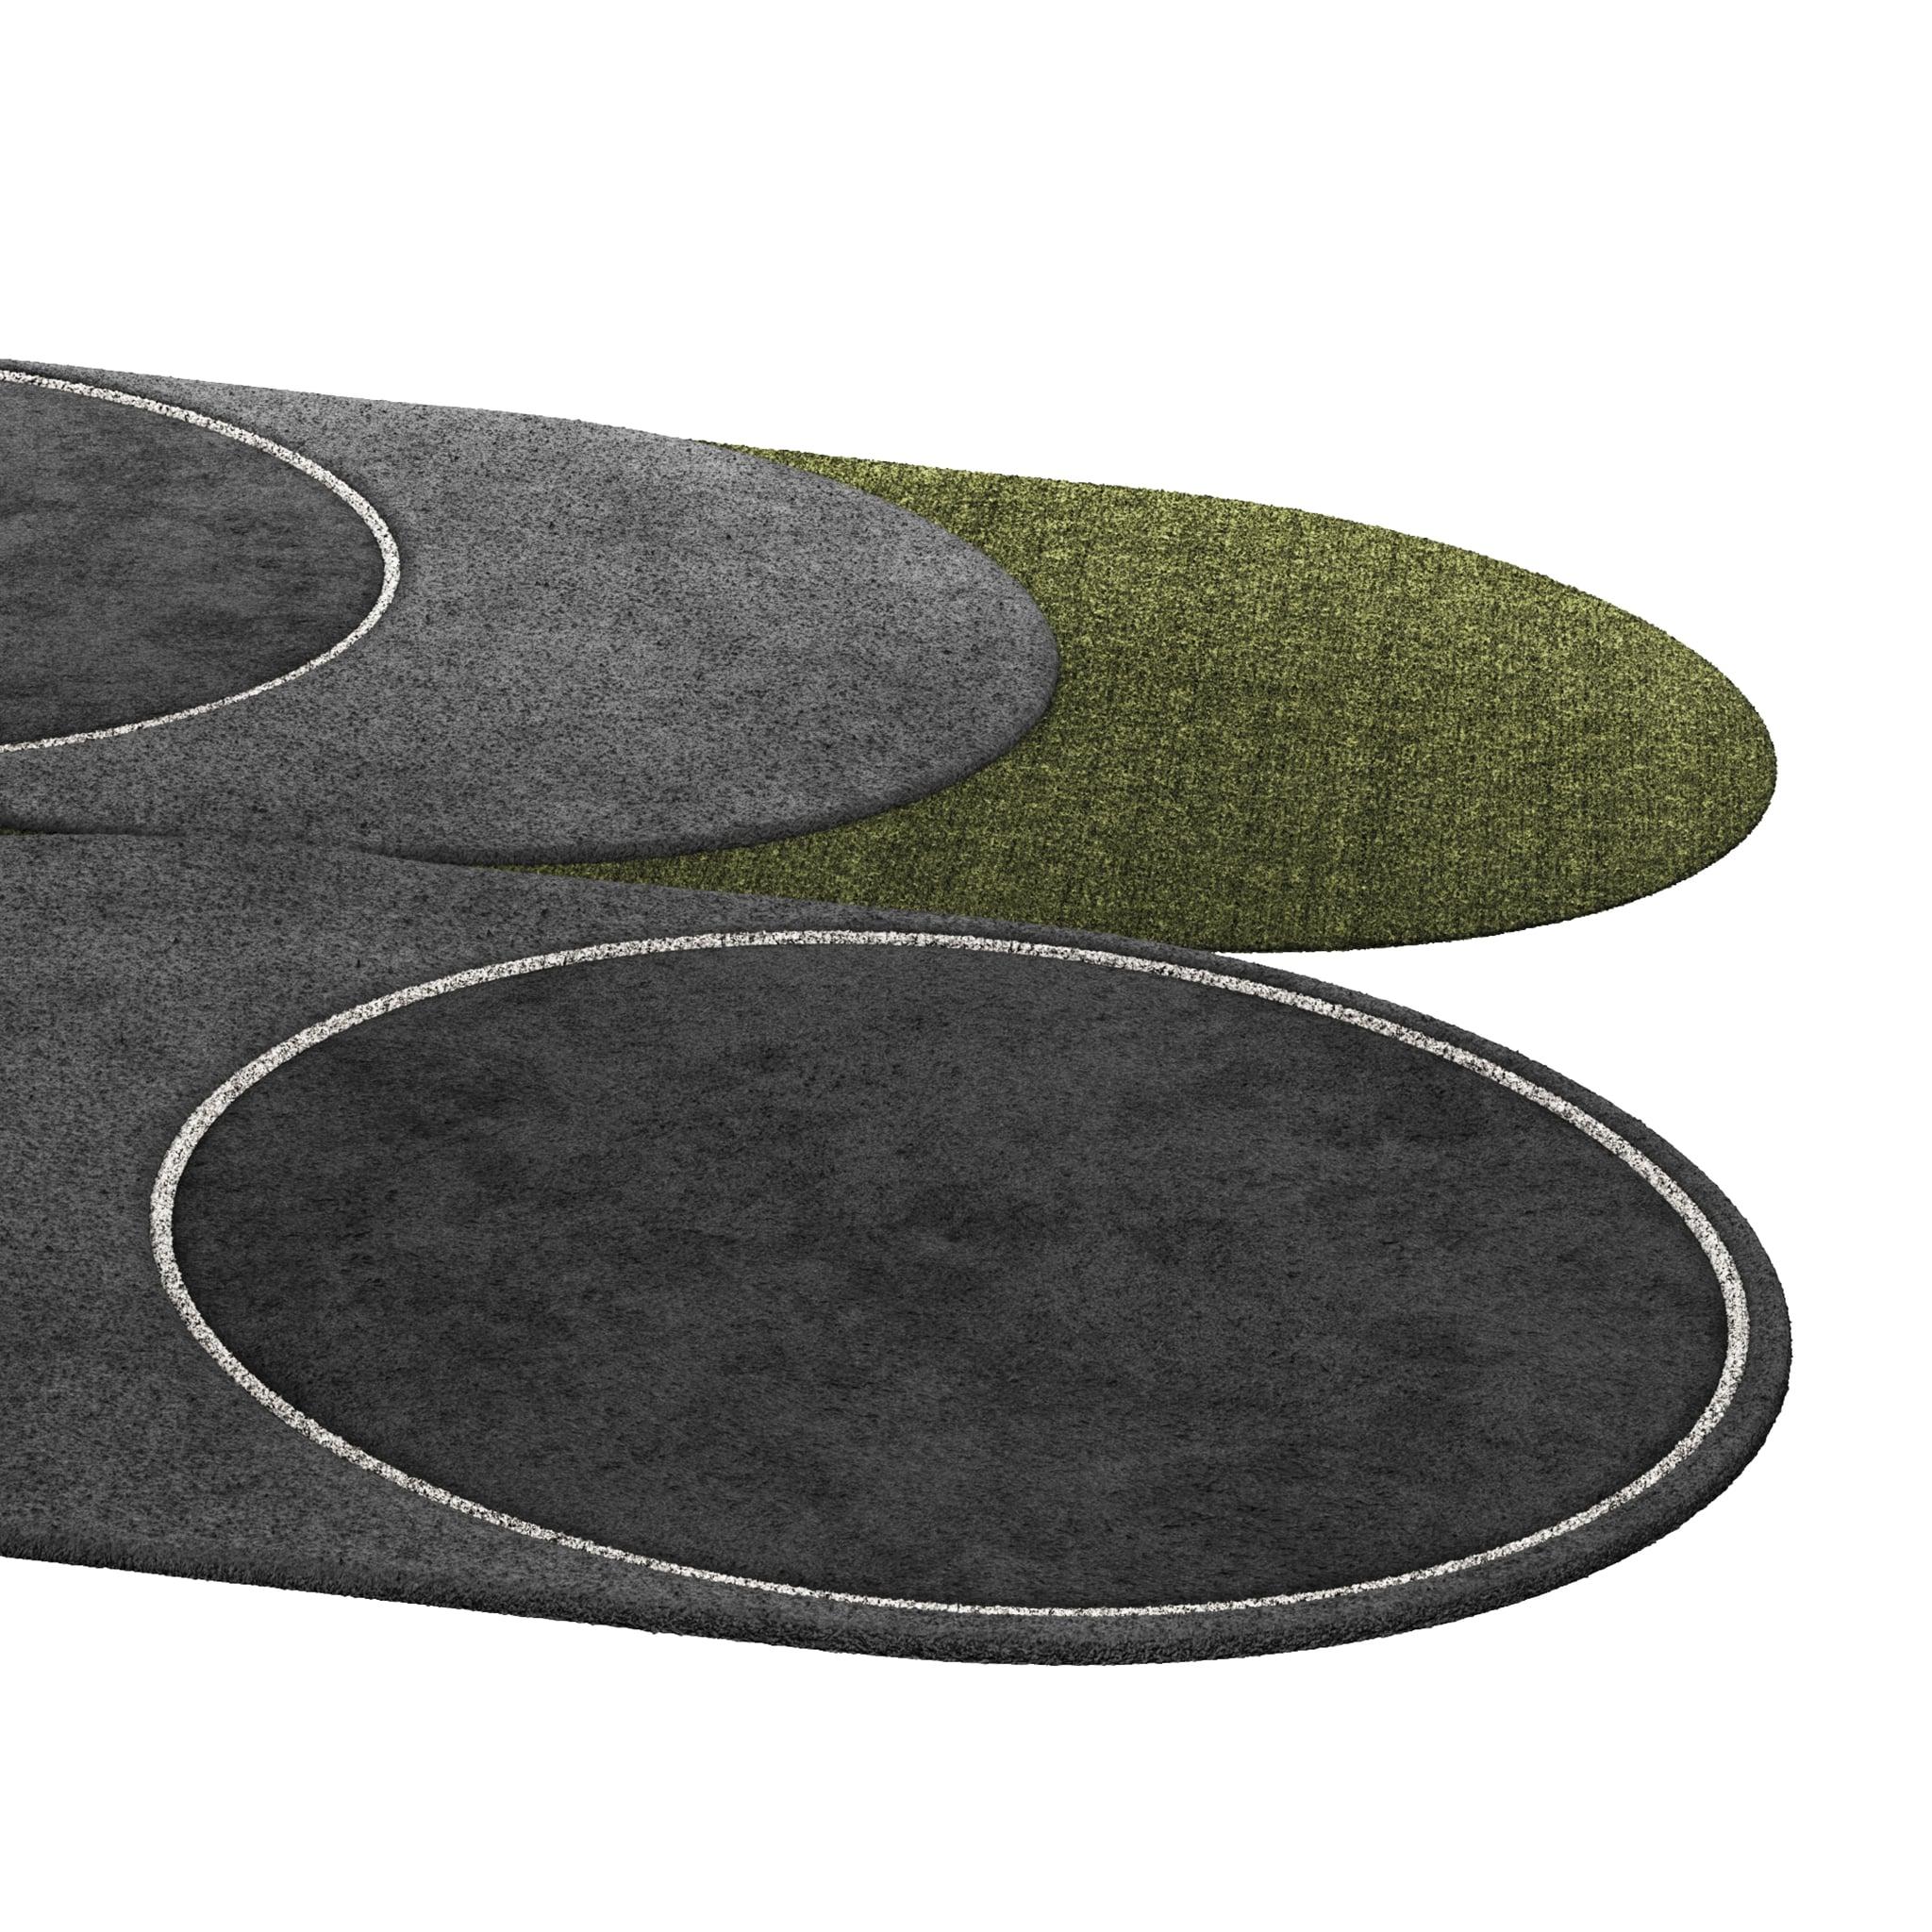 Tapis Retro #013 ist ein Retro-Teppich mit einer unregelmäßigen Form und zeitlosen Farben. Inspiriert von architektonischen Linien, setzt dieser geometrische Teppich in jedem Wohnbereich ein Zeichen. 

Der Retro-Teppich in Schwarz, Grau und Grün mit